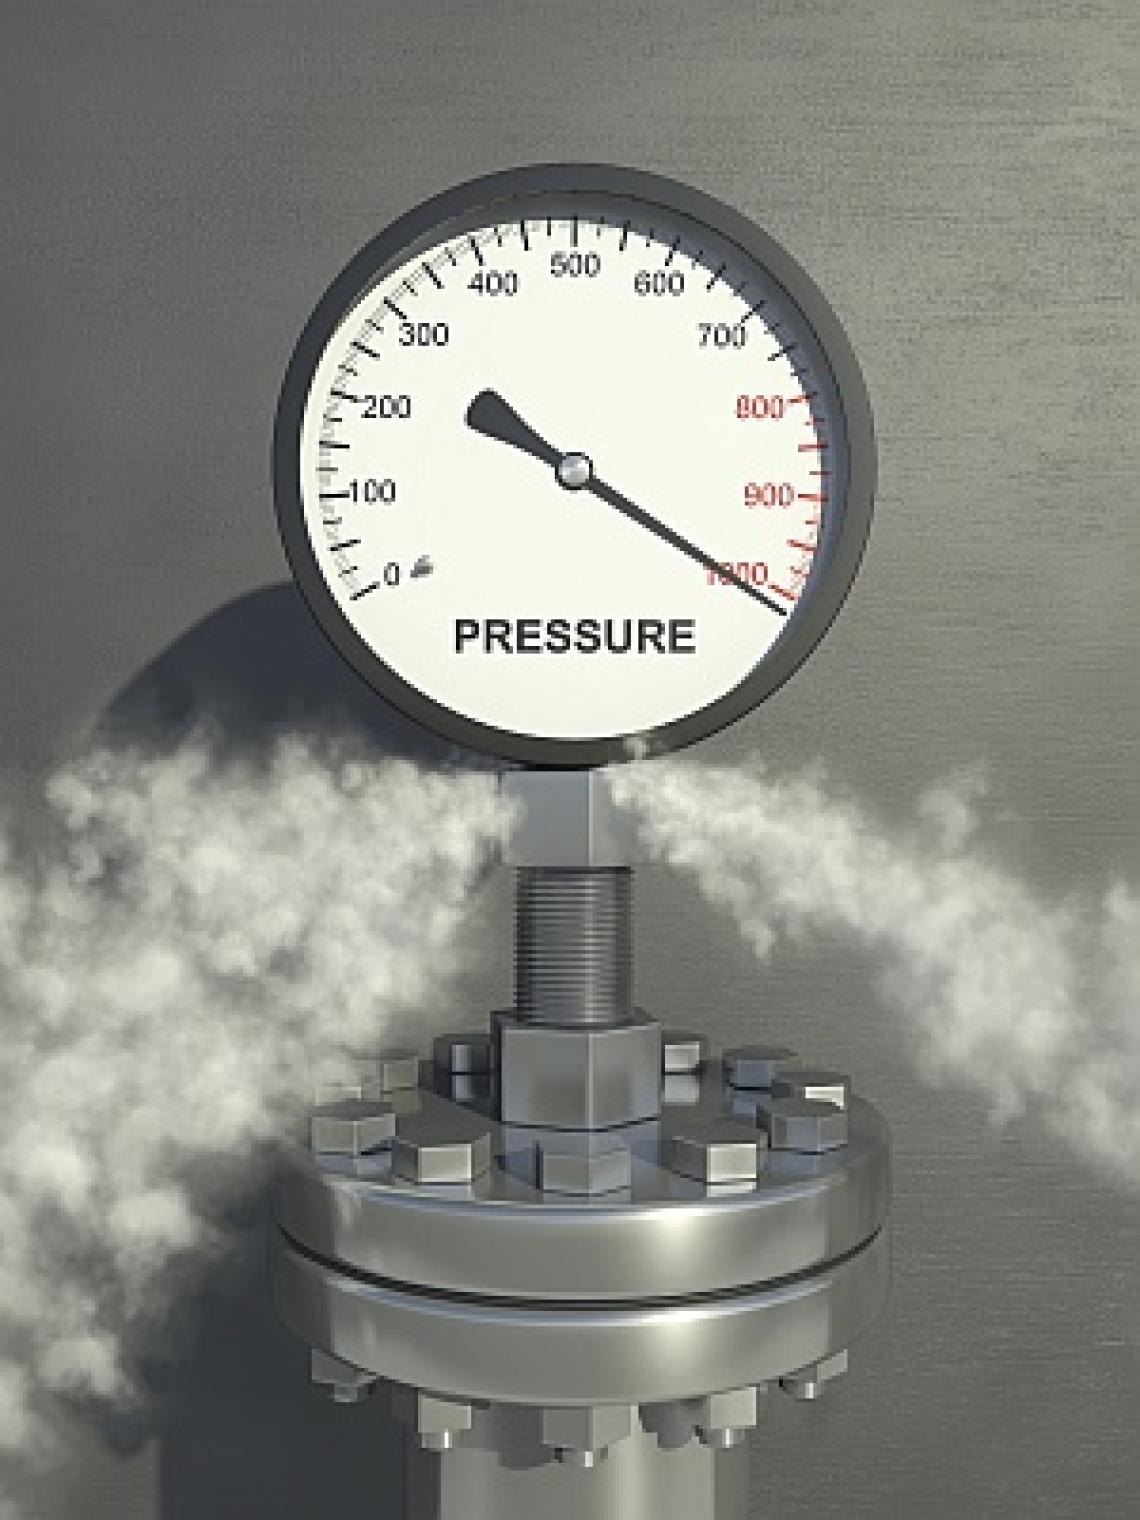 High pressure steam temperature and pressure фото 115